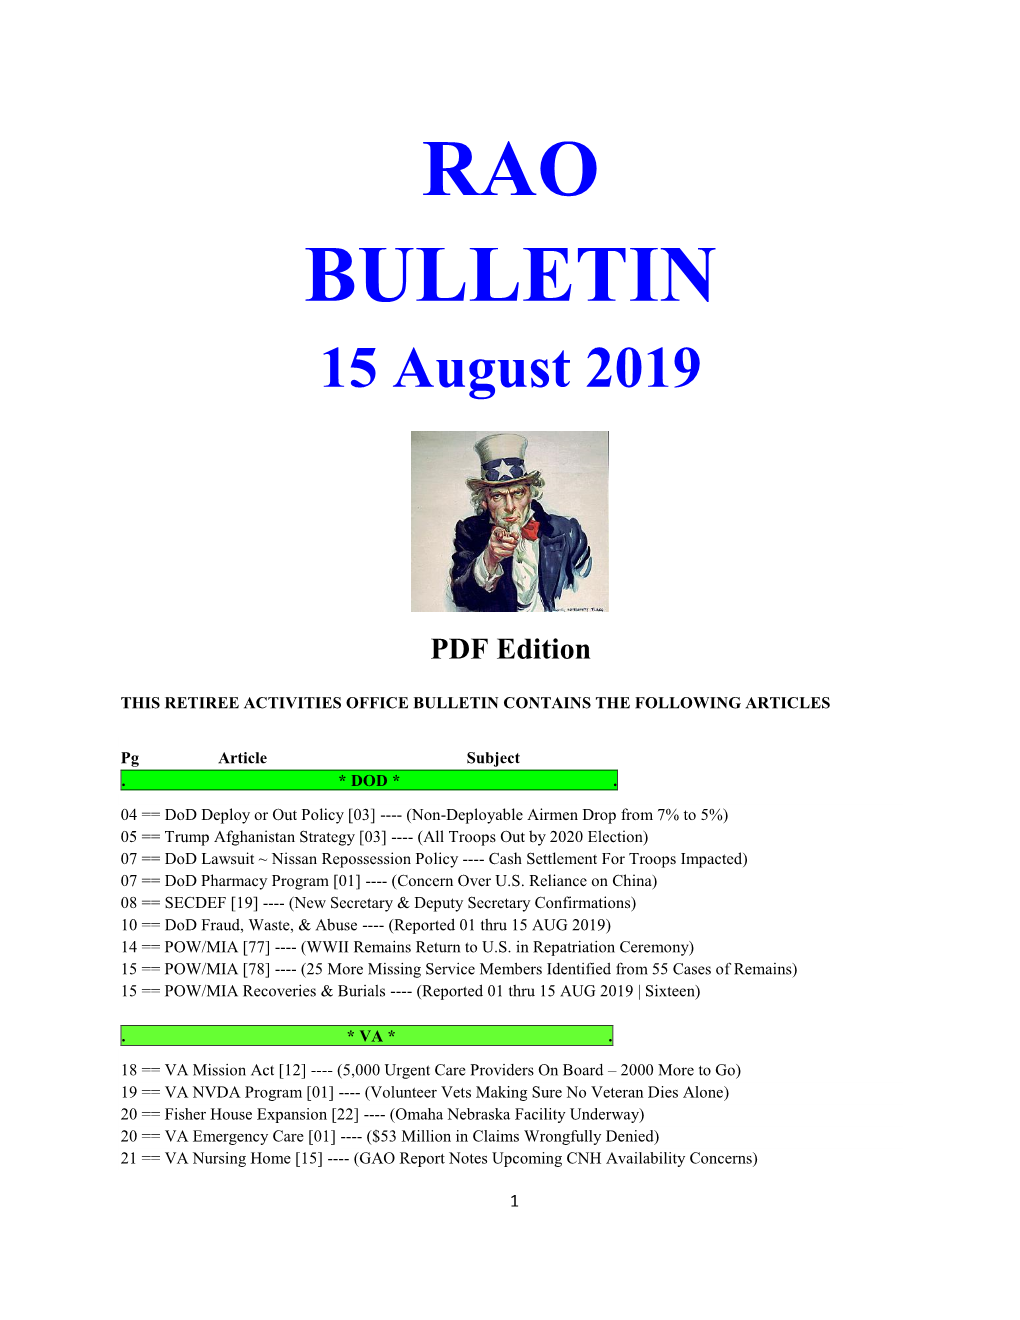 Bulletin 190815 (PDF Edition)